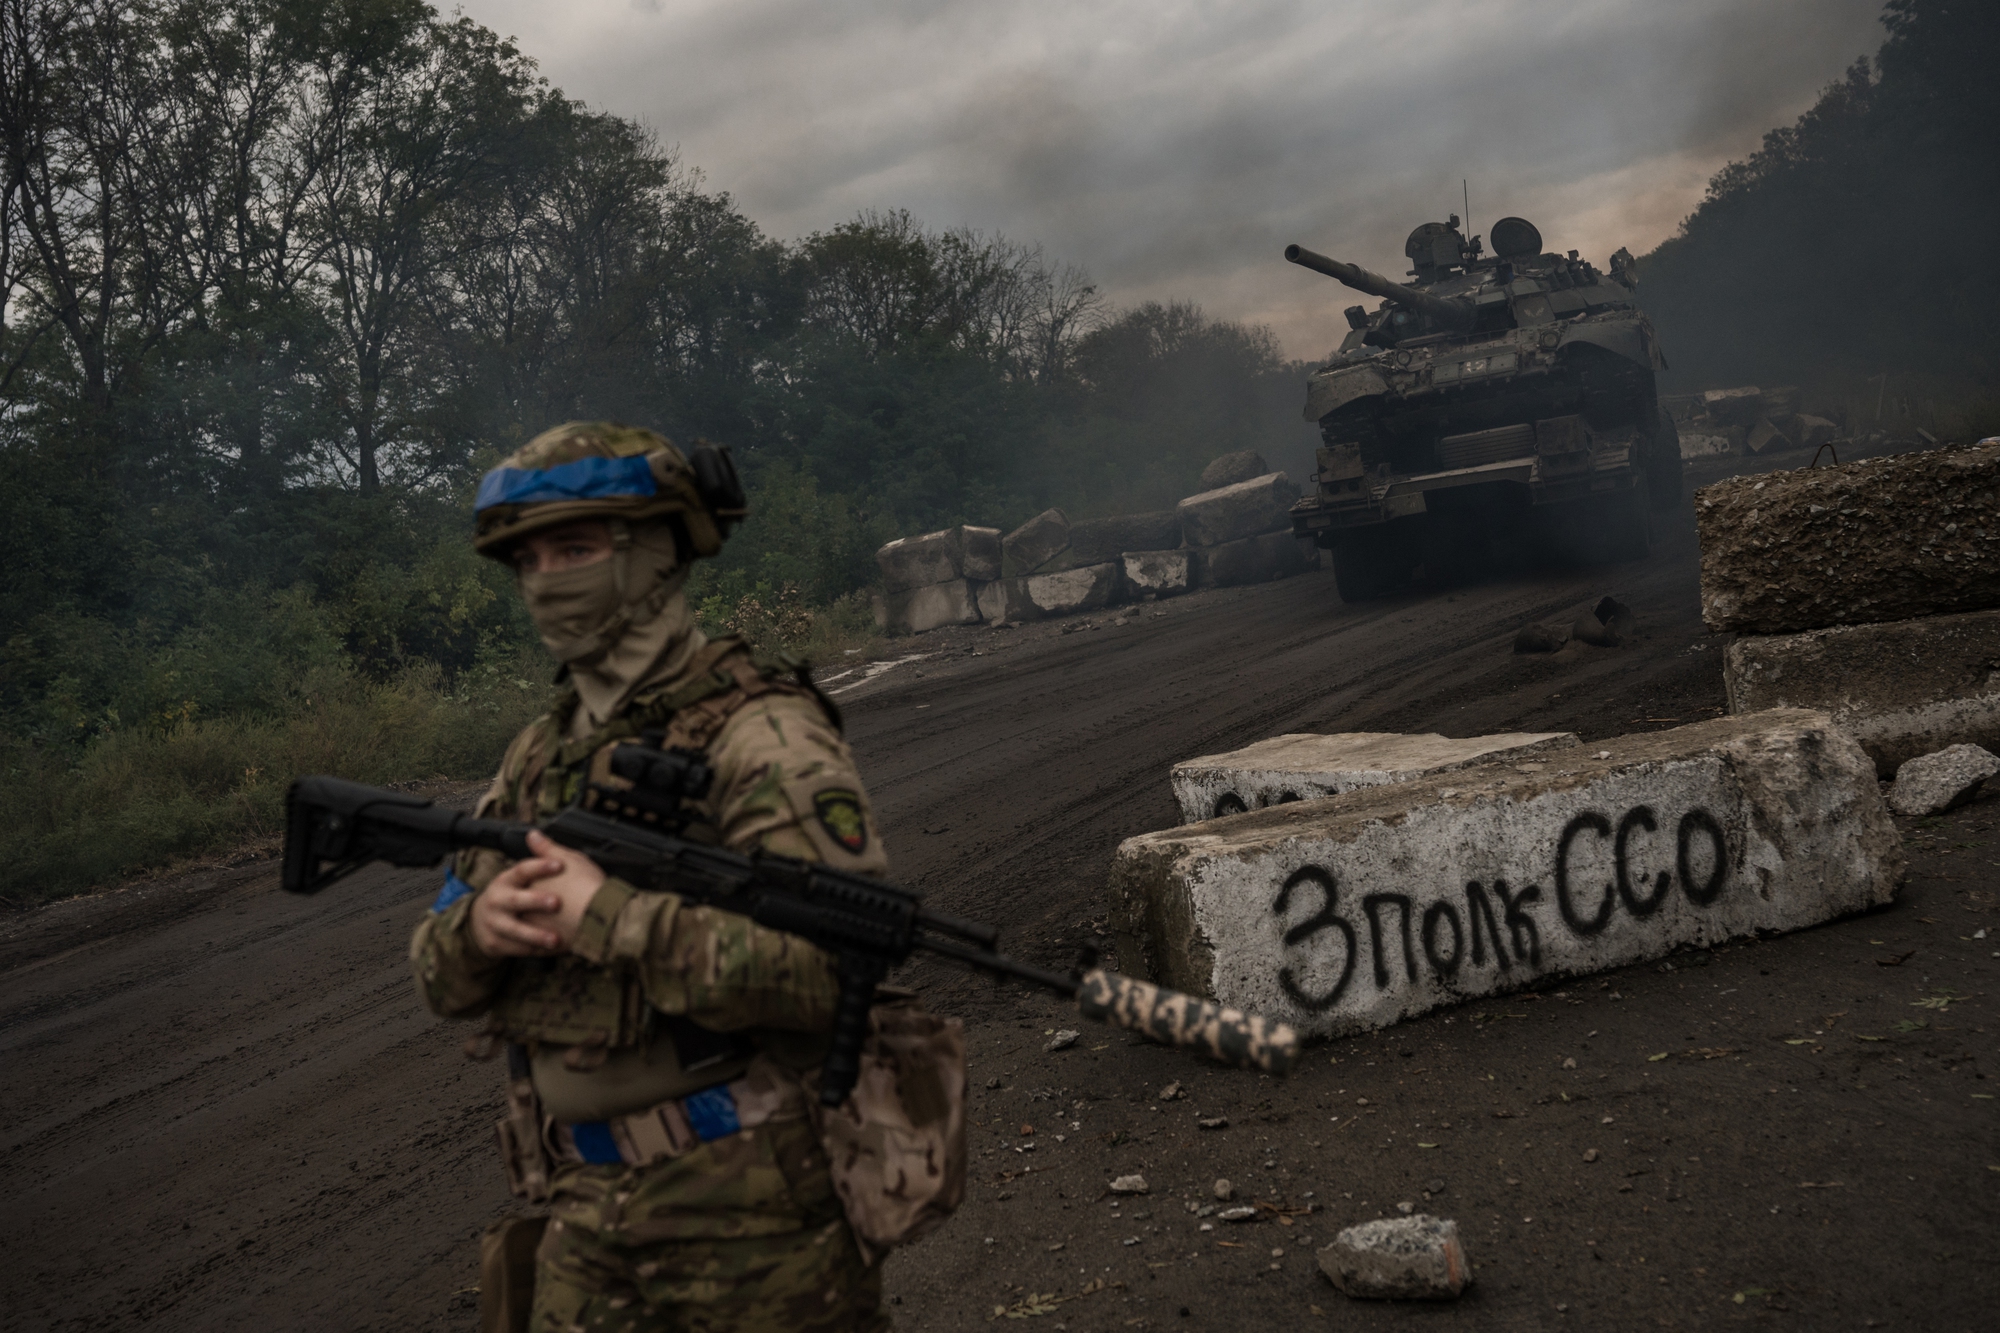 Ukraine, cuộc phản công, xe tăng: Hình ảnh liên quan đến cuộc phản công của Ukraine bằng xe tăng chắc chắn sẽ khiến bạn cảm thấy thích thú và háo hức. Cùng theo dõi những đường nét tinh tế trên chiếc xe này, trải nghiệm cảm giác tựa như tham gia chiến trường thực sự